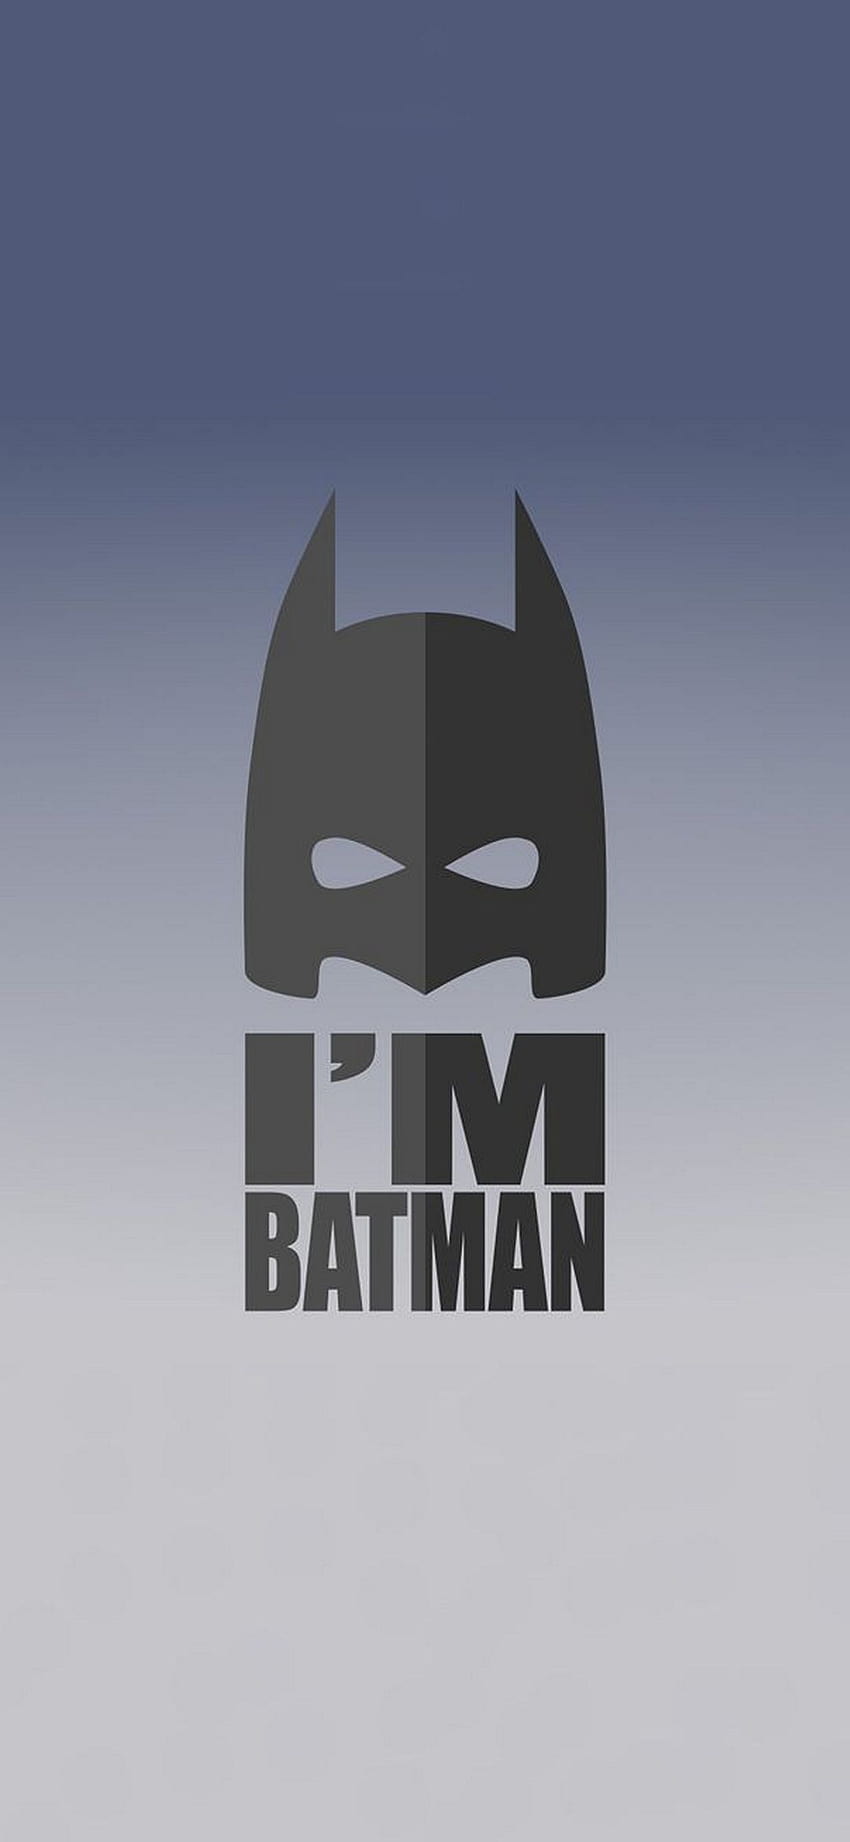 I'M Batman for iOS 14 iPhone, i am batman HD phone wallpaper | Pxfuel